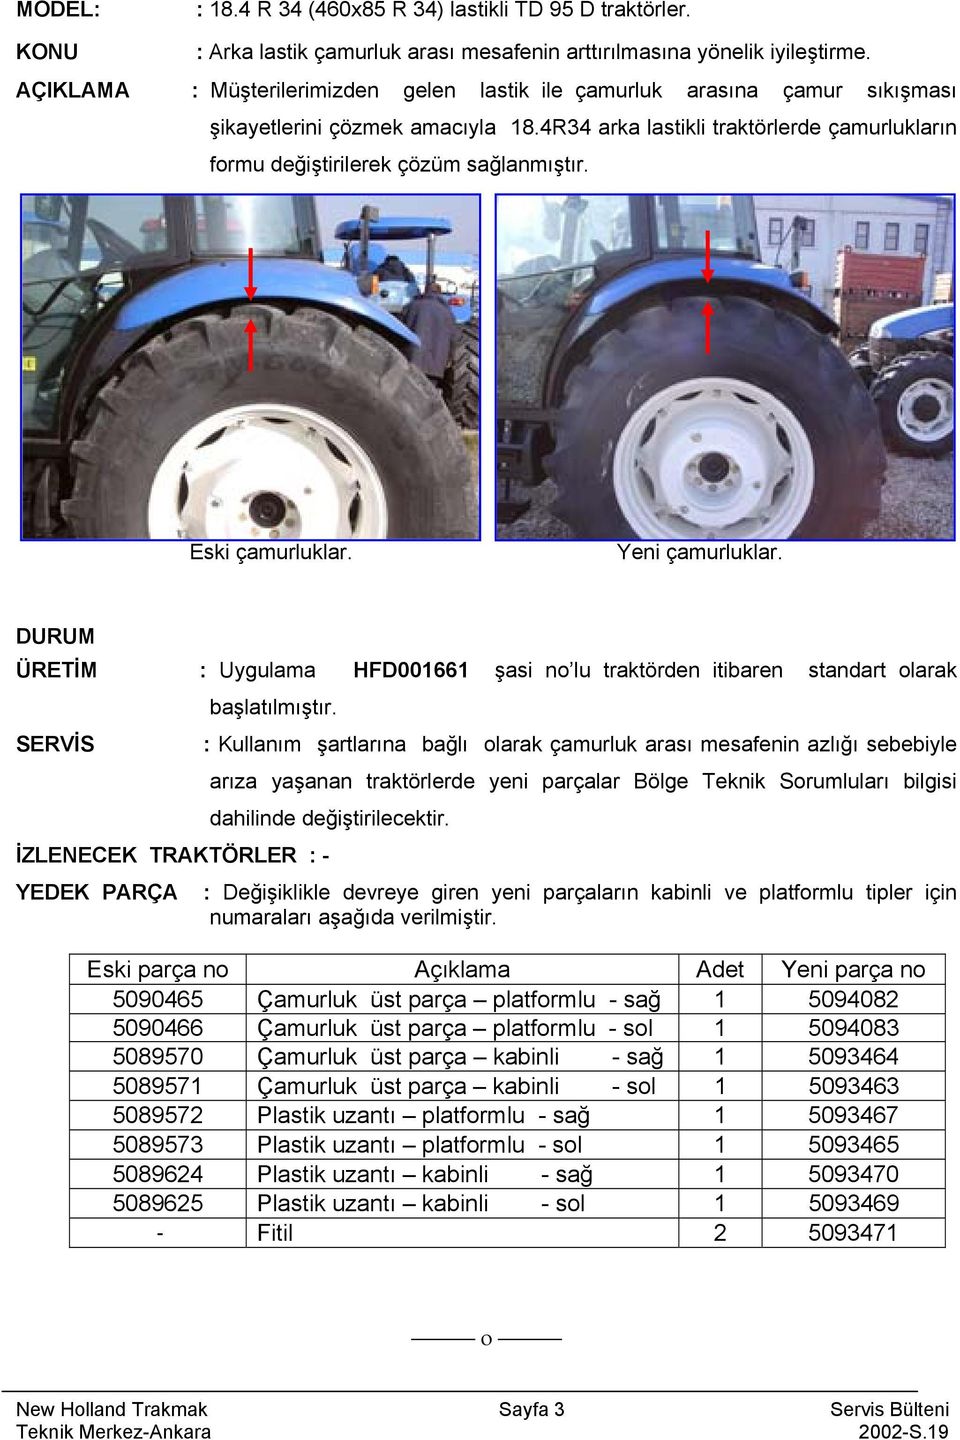 Eski çamurluklar. Yeni çamurluklar. : Uygulama HFD001661 şasi no lu traktörden itibaren standart olarak SERVİS başlatılmıştır.